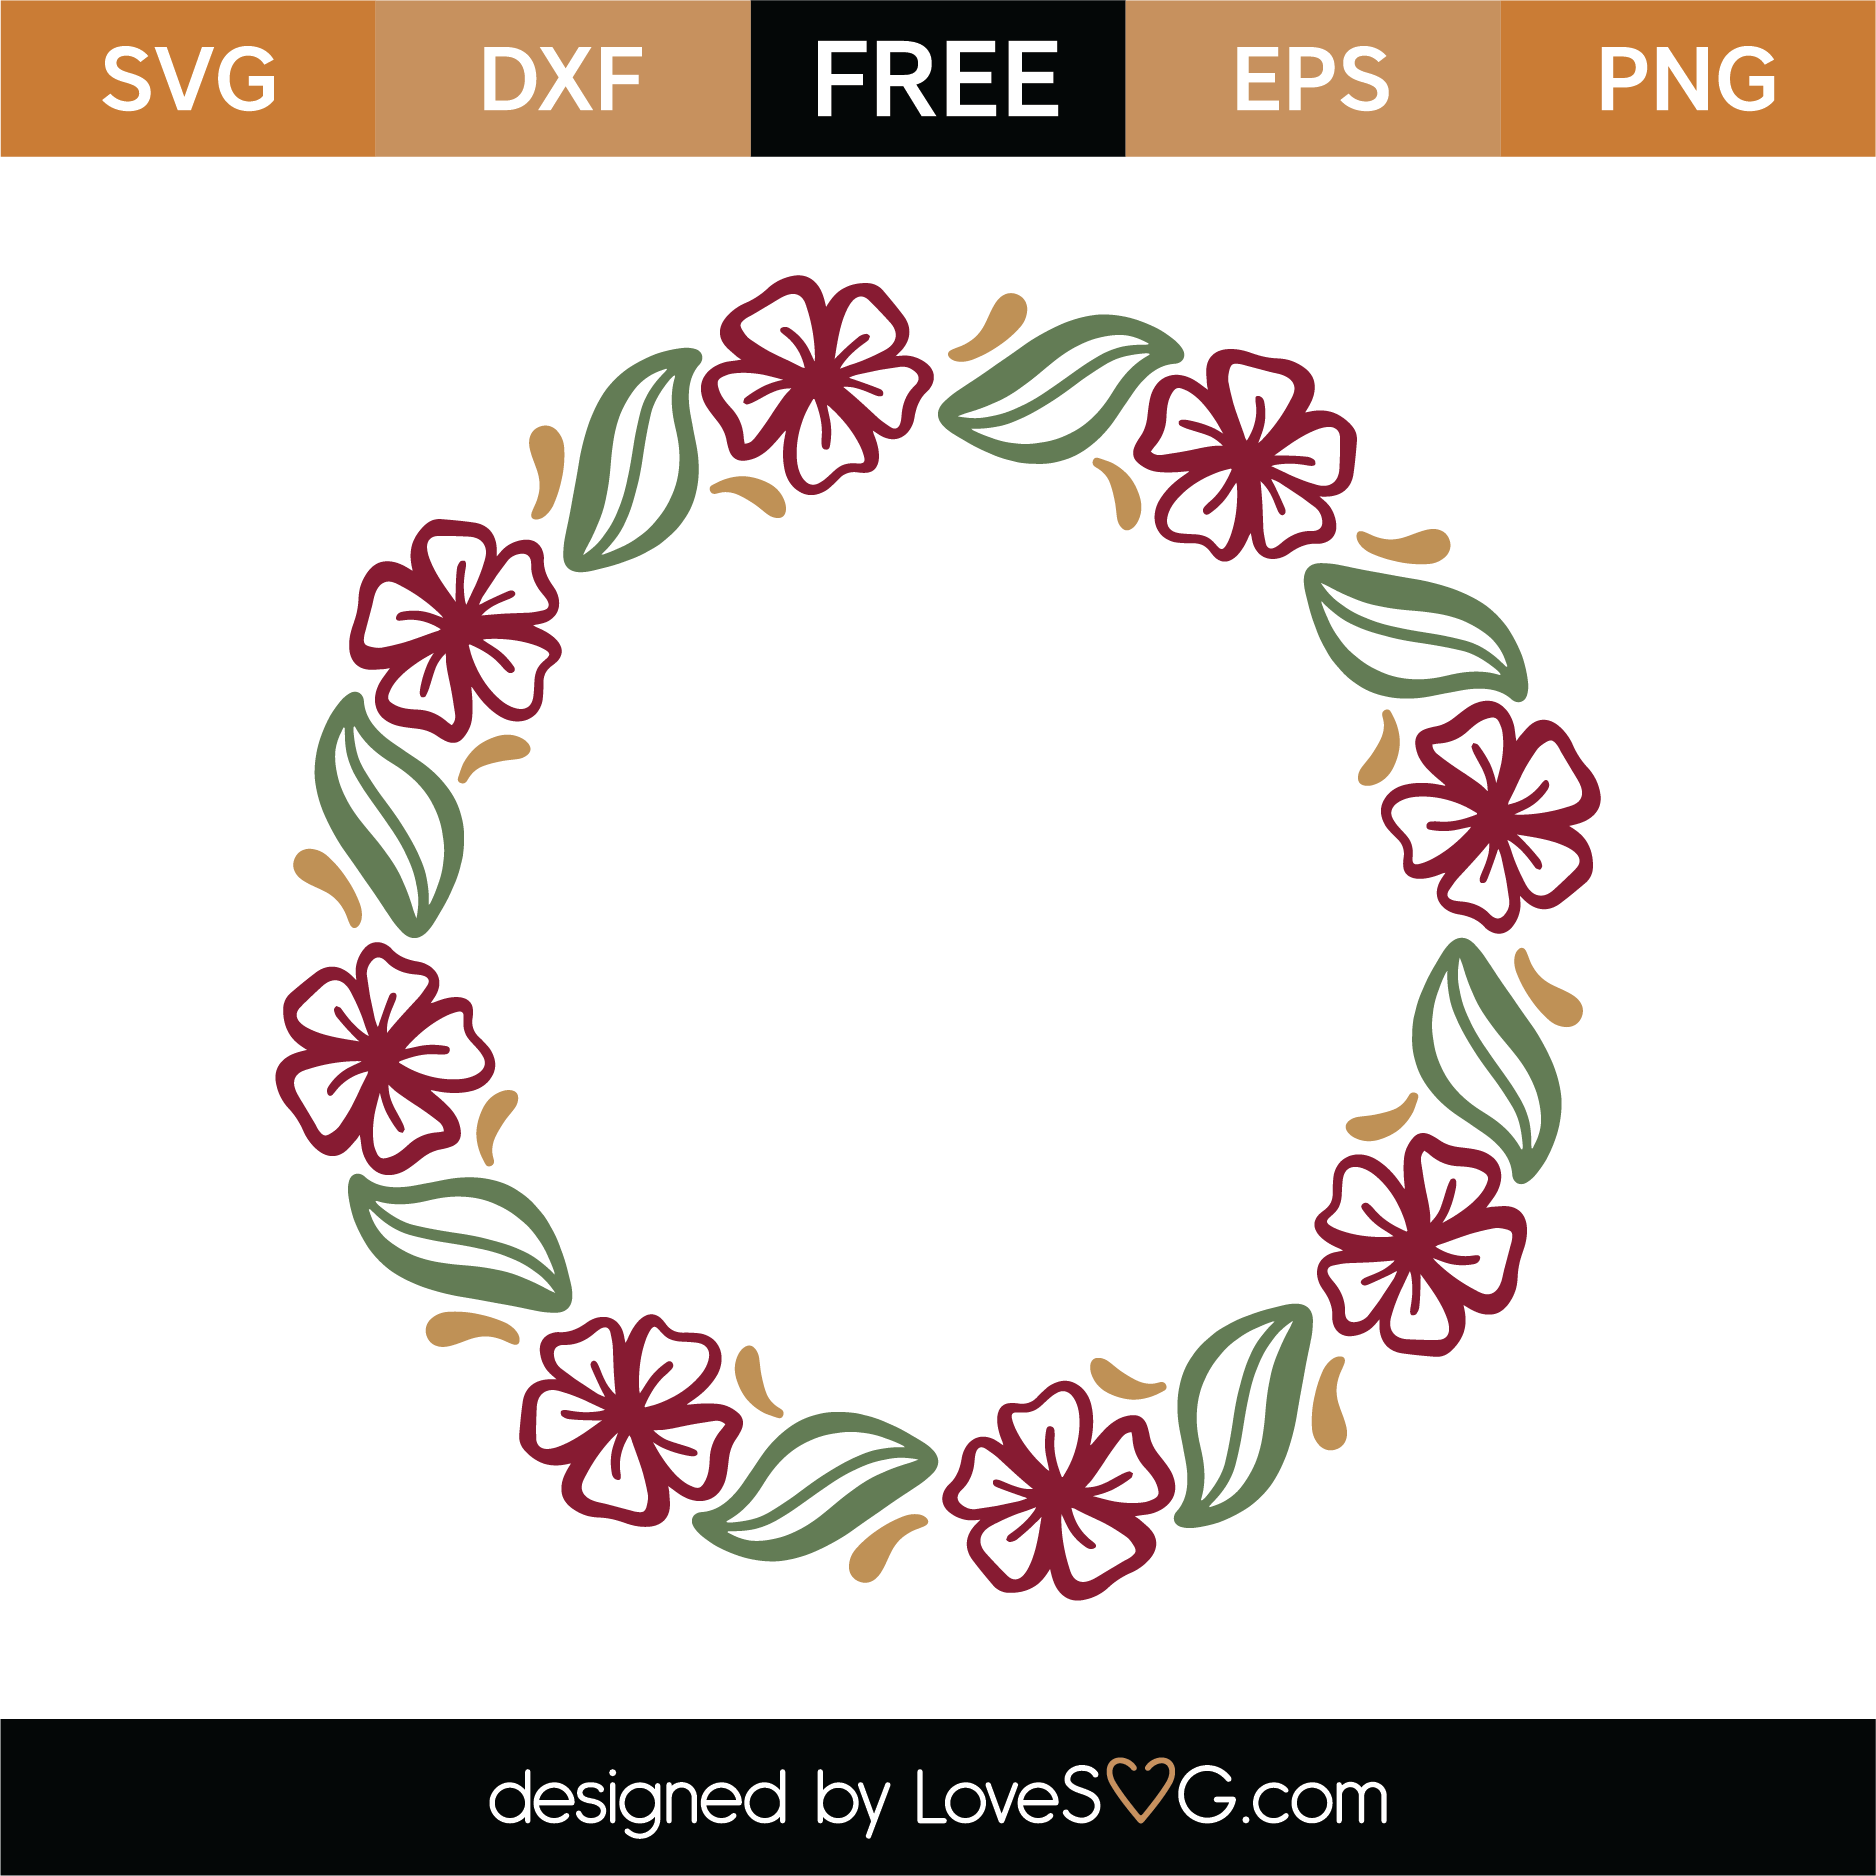 Download Free Spring Monogram Frame SVG Cut File | Lovesvg.com